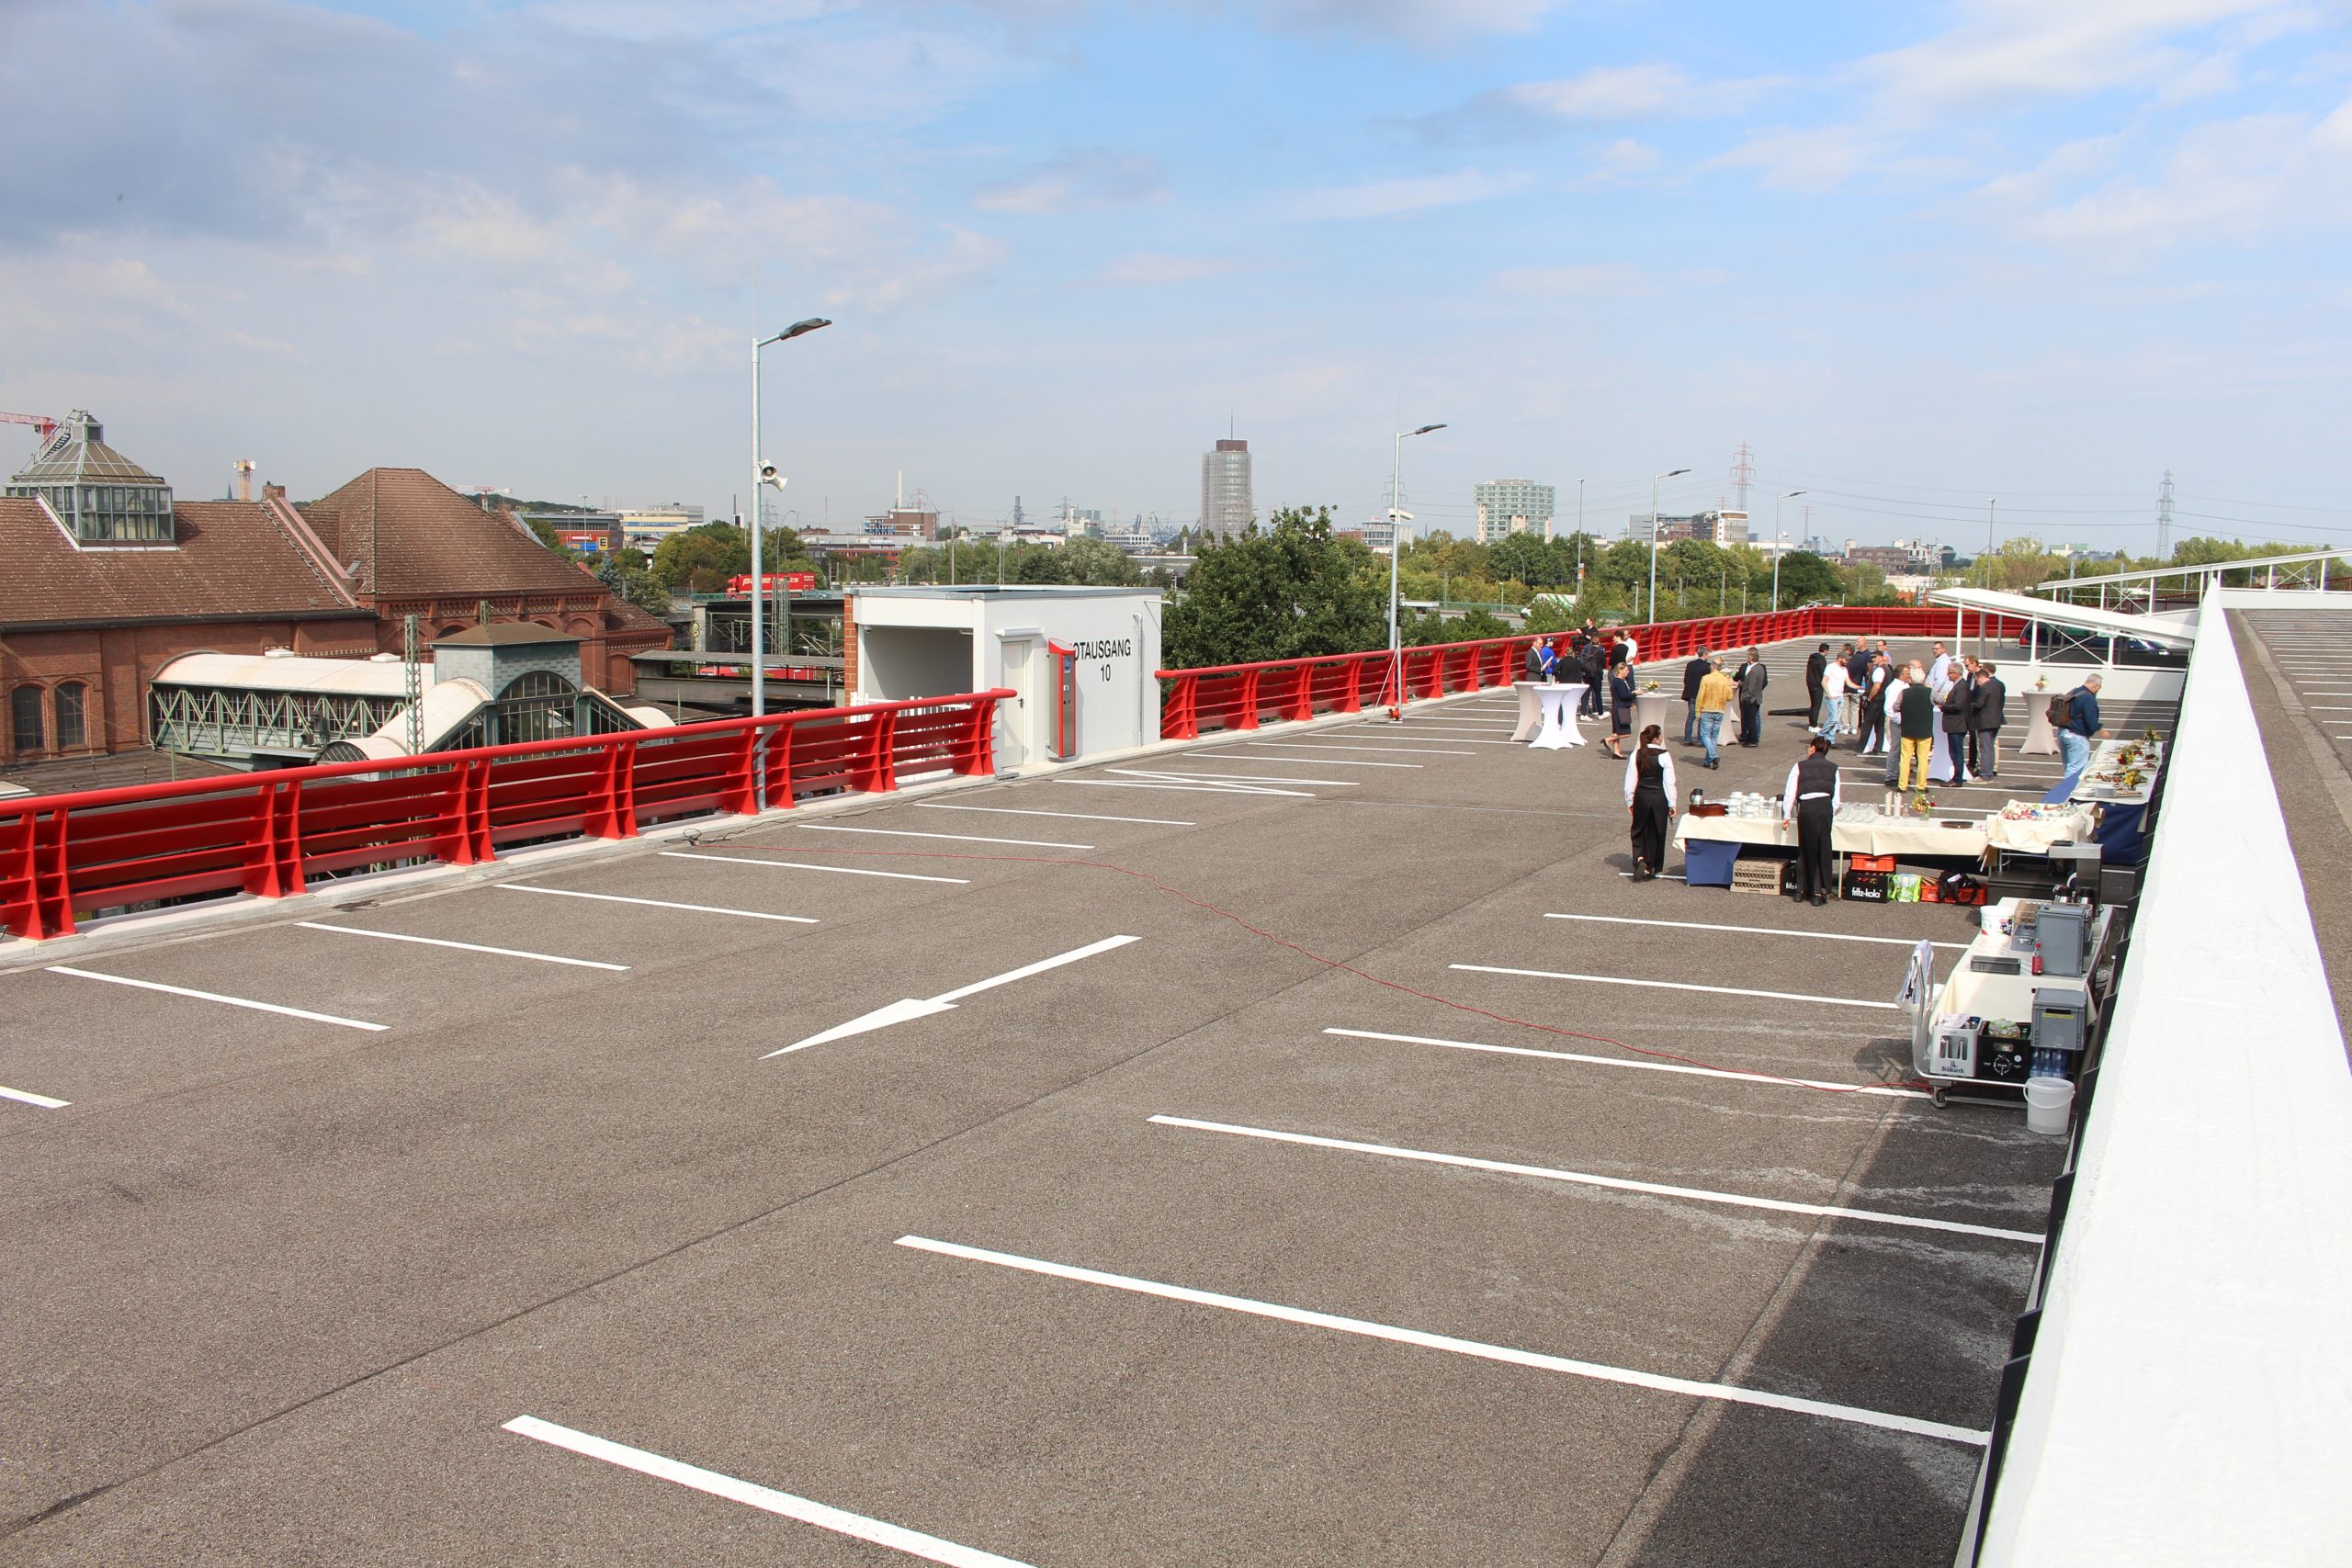 Foto: pm -Das untere der beiden neuen draufgesattelten Parkdecks: Insgesamt sind 200 neue Stellplätze entstanden